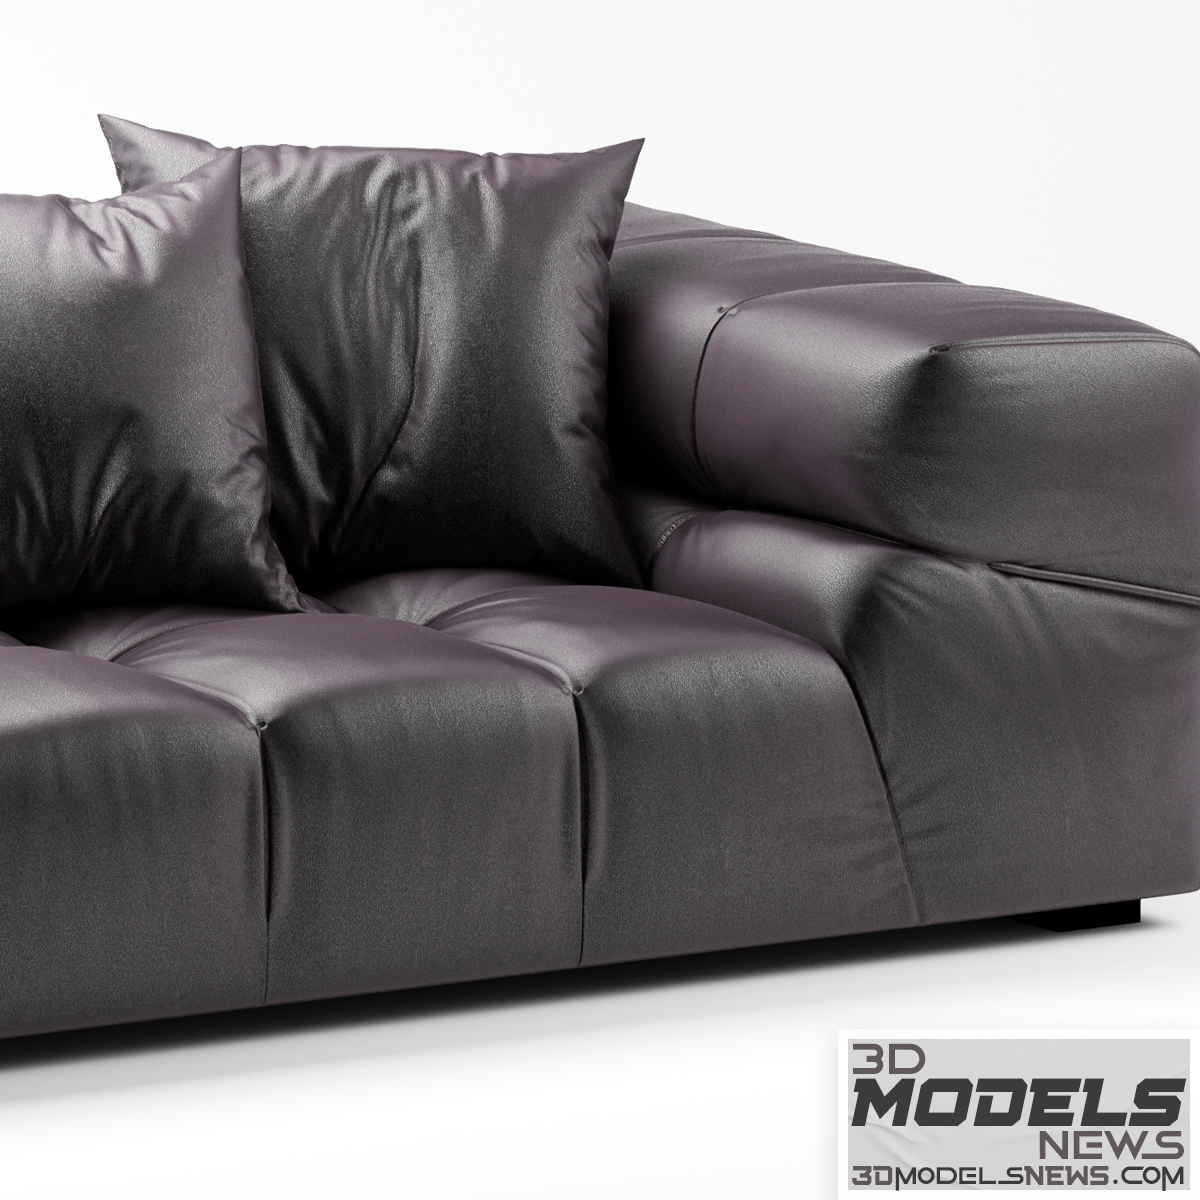 Sofa bebitalia tufty time leather model 3